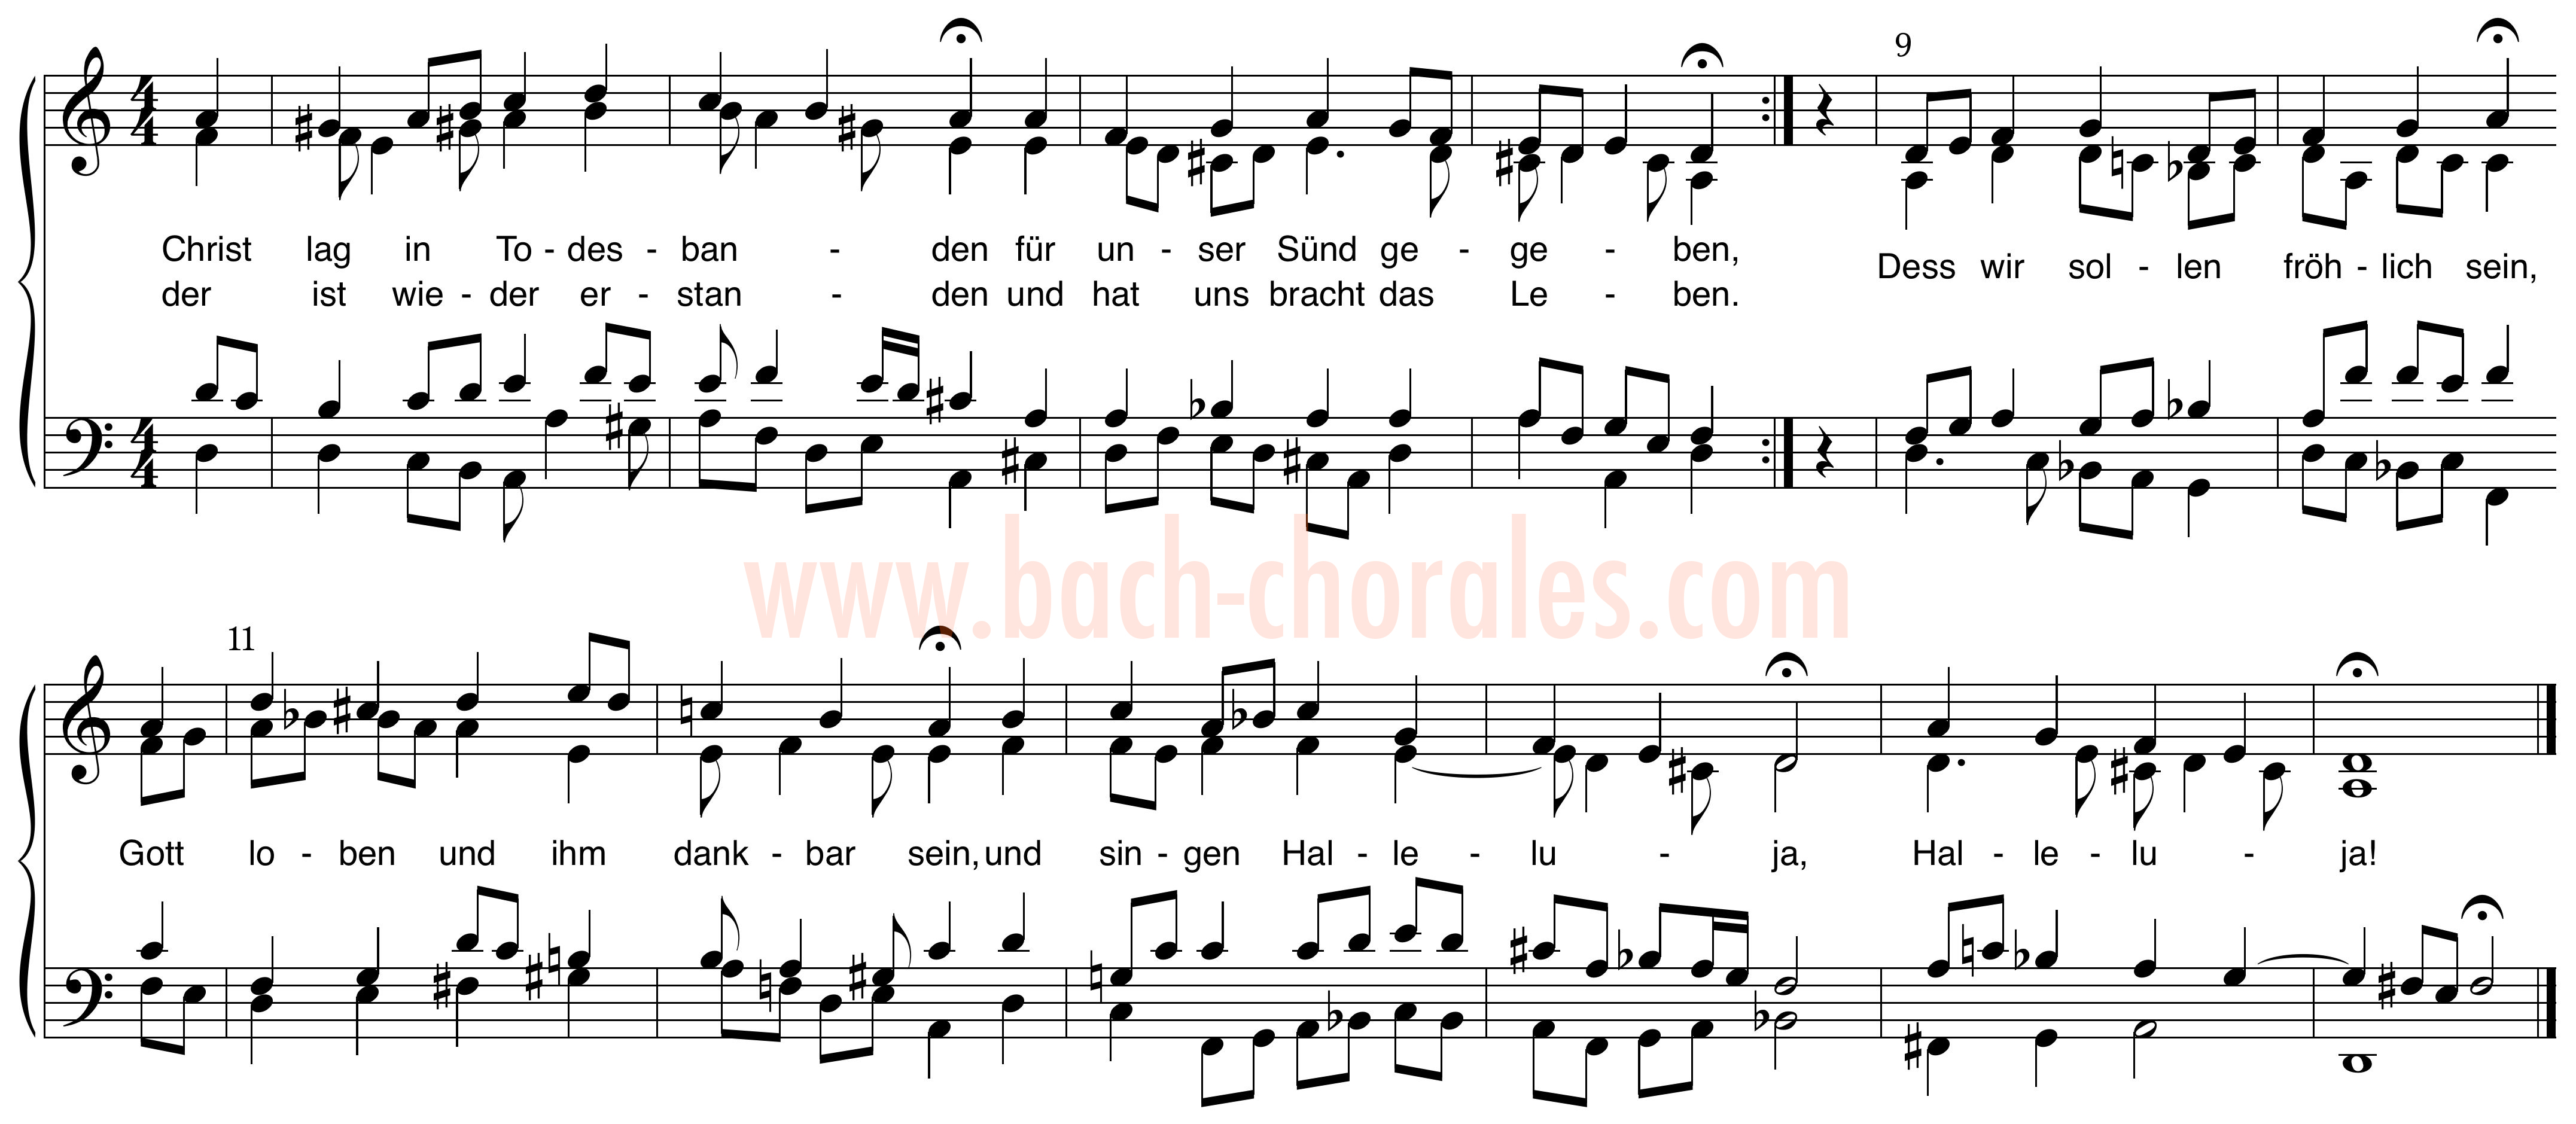 notenbeeld BWV 277 op https://www.bach-chorales.com/